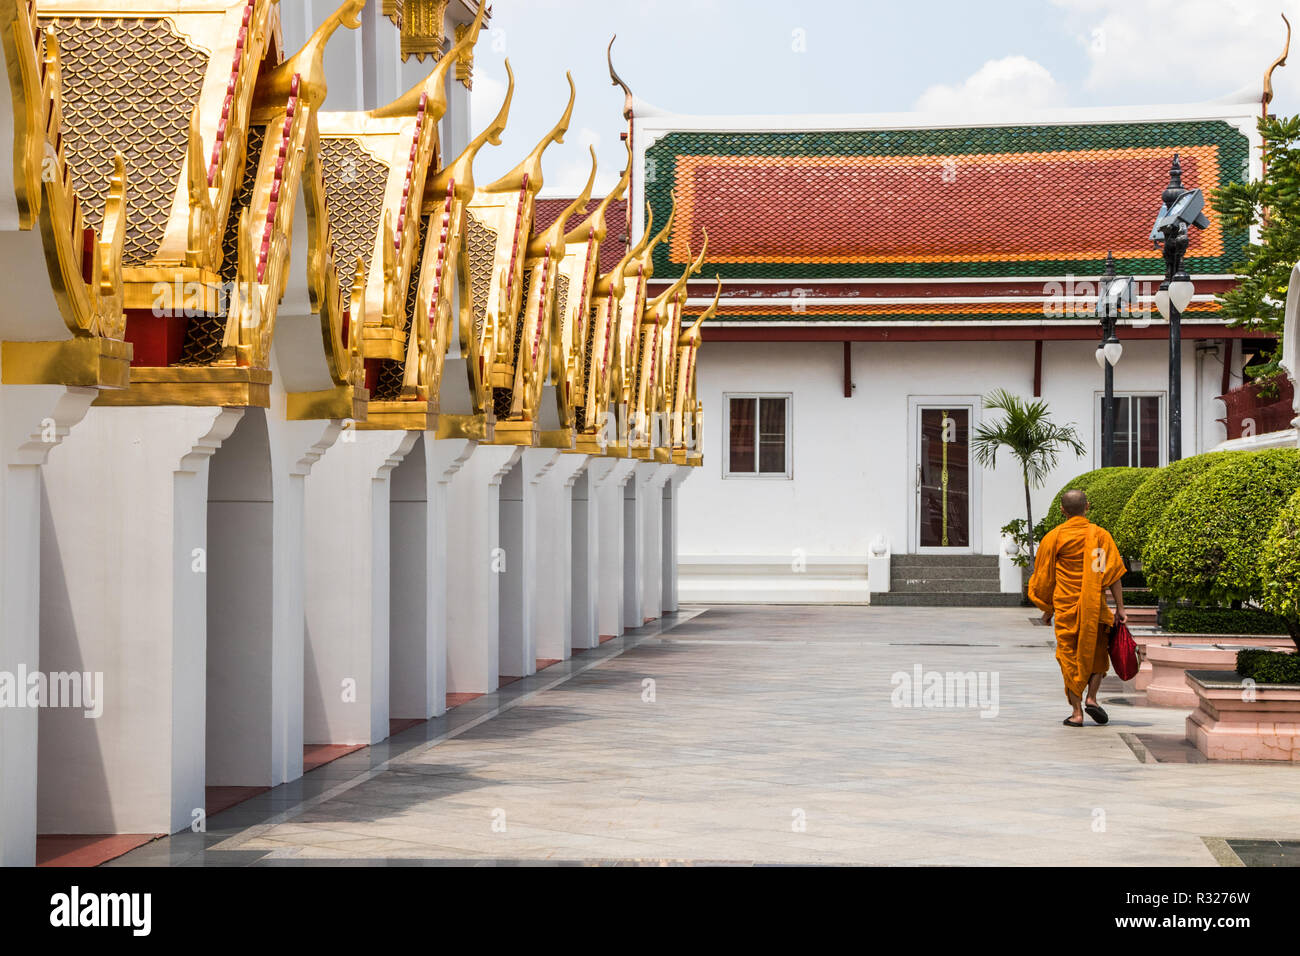 Un moine bouddhiste en robes orange marche dernières Wat Ratchanadda, Bangkok. Les 37 clochers tout métal symbolisent les 37 vertus qui mènent à l'illumination Banque D'Images